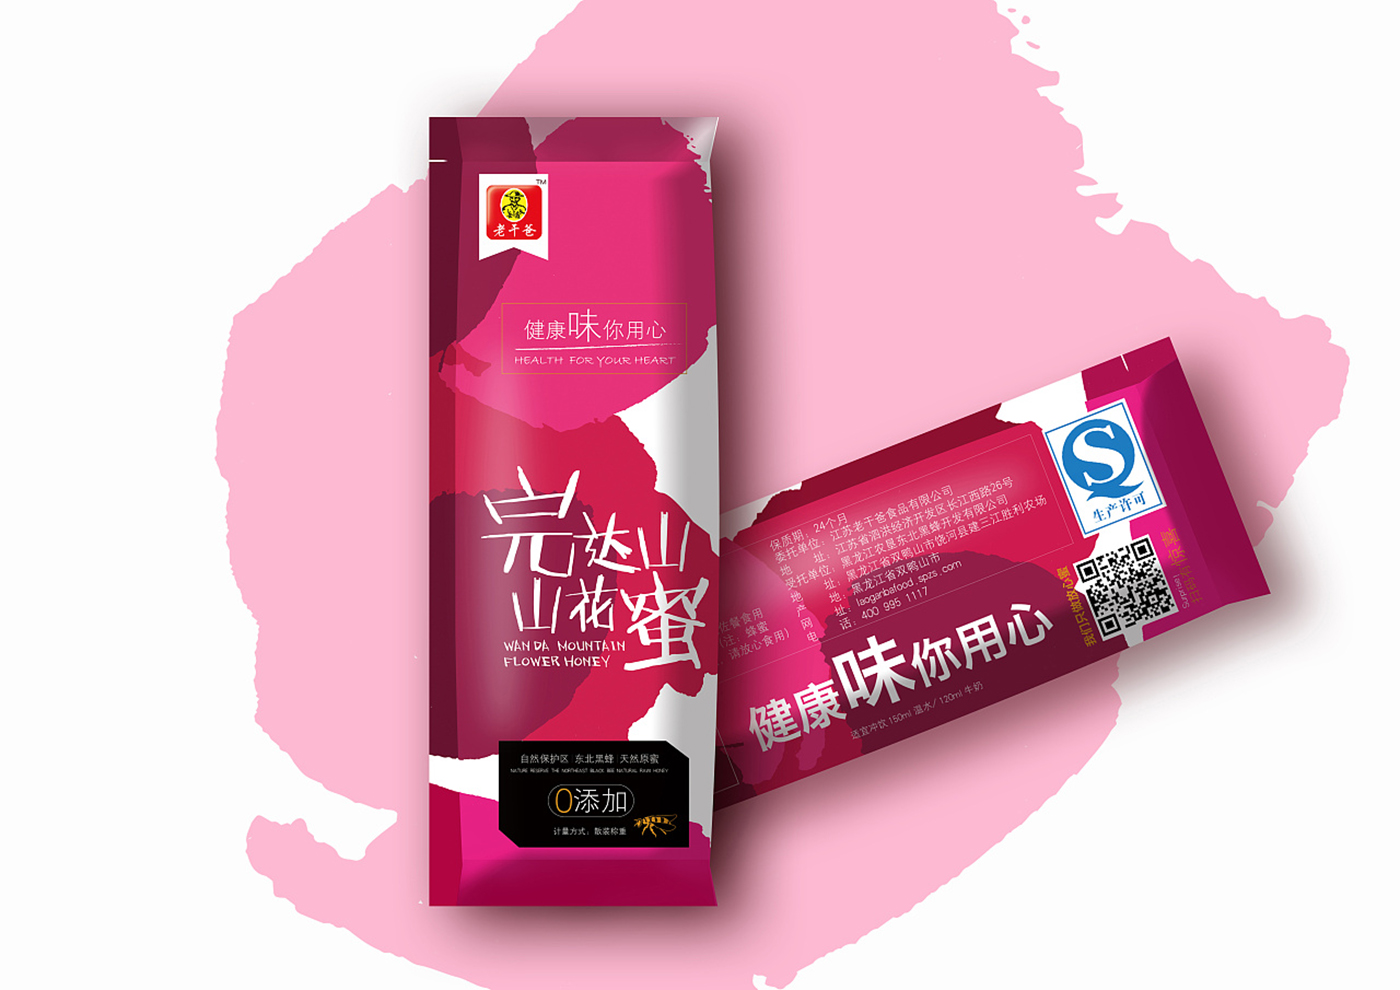 江苏老干爸食品有限公司-老干爸蜂蜜系列包装4